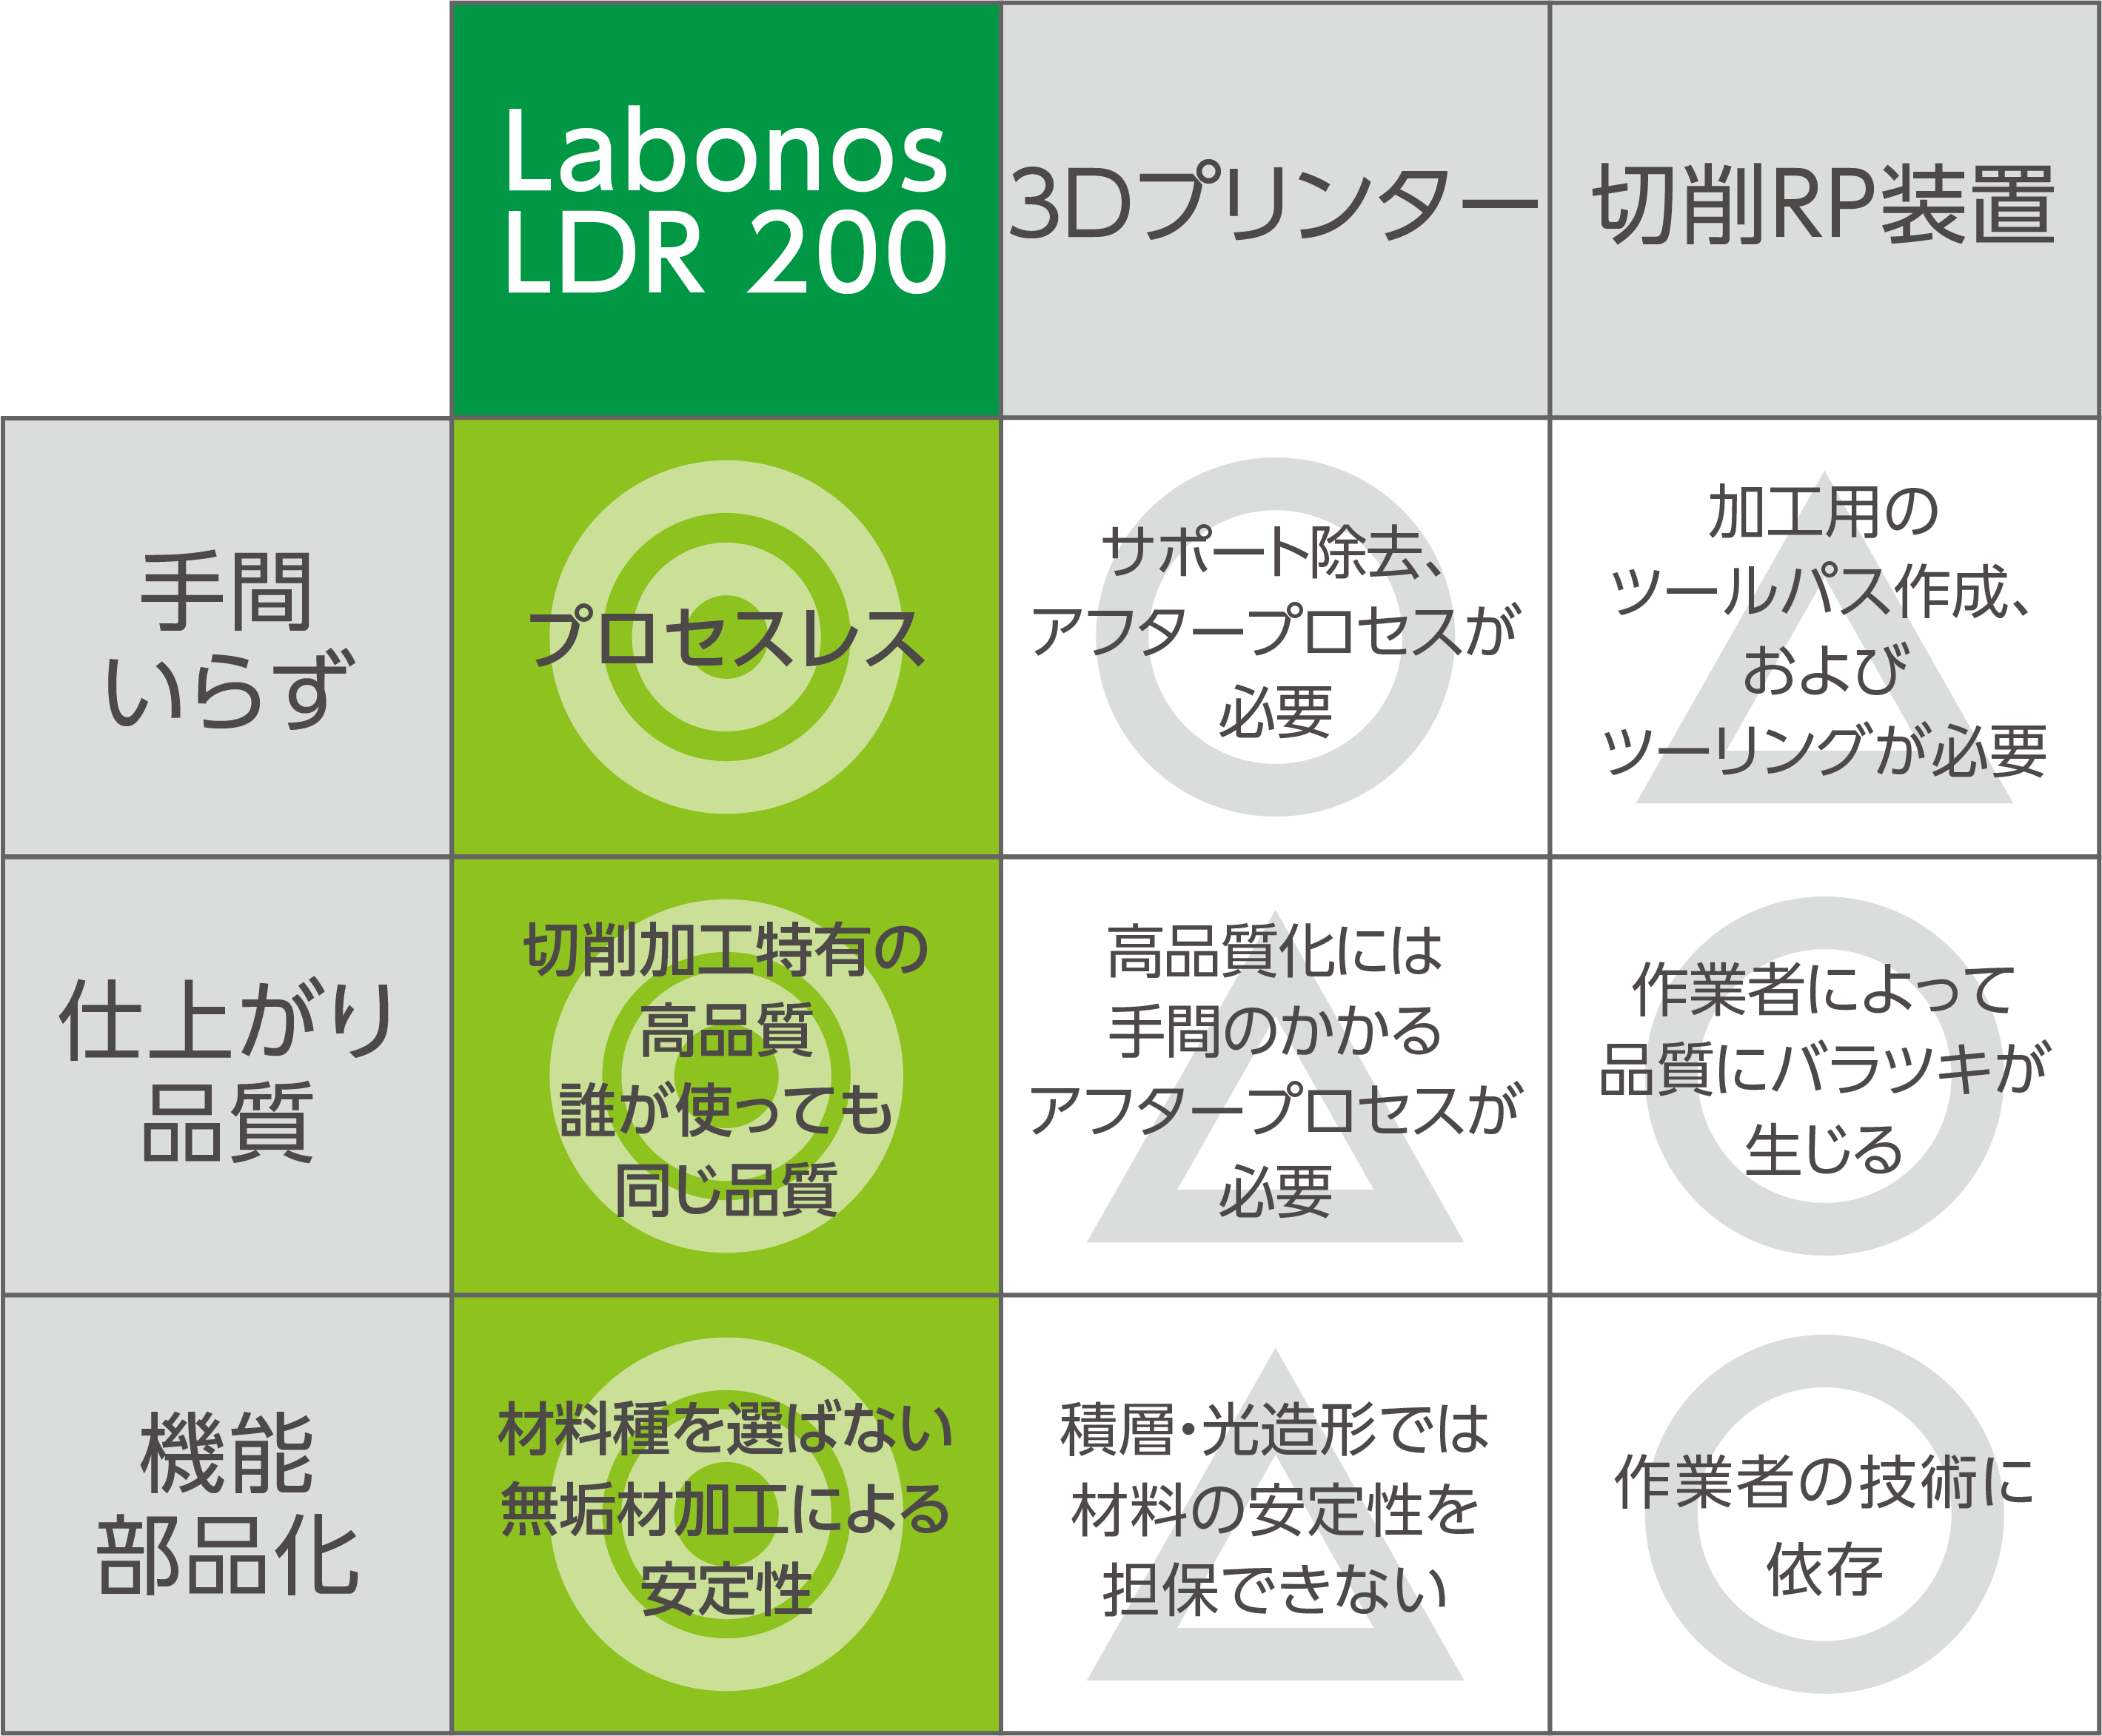 Labonos、3Dプリンター、切削RP装置、それぞれ装置において「手間いらず」「仕上がり品質」「機能部品化」での優位性を比較紹介。どの点においてもLabonosは優位性があります。